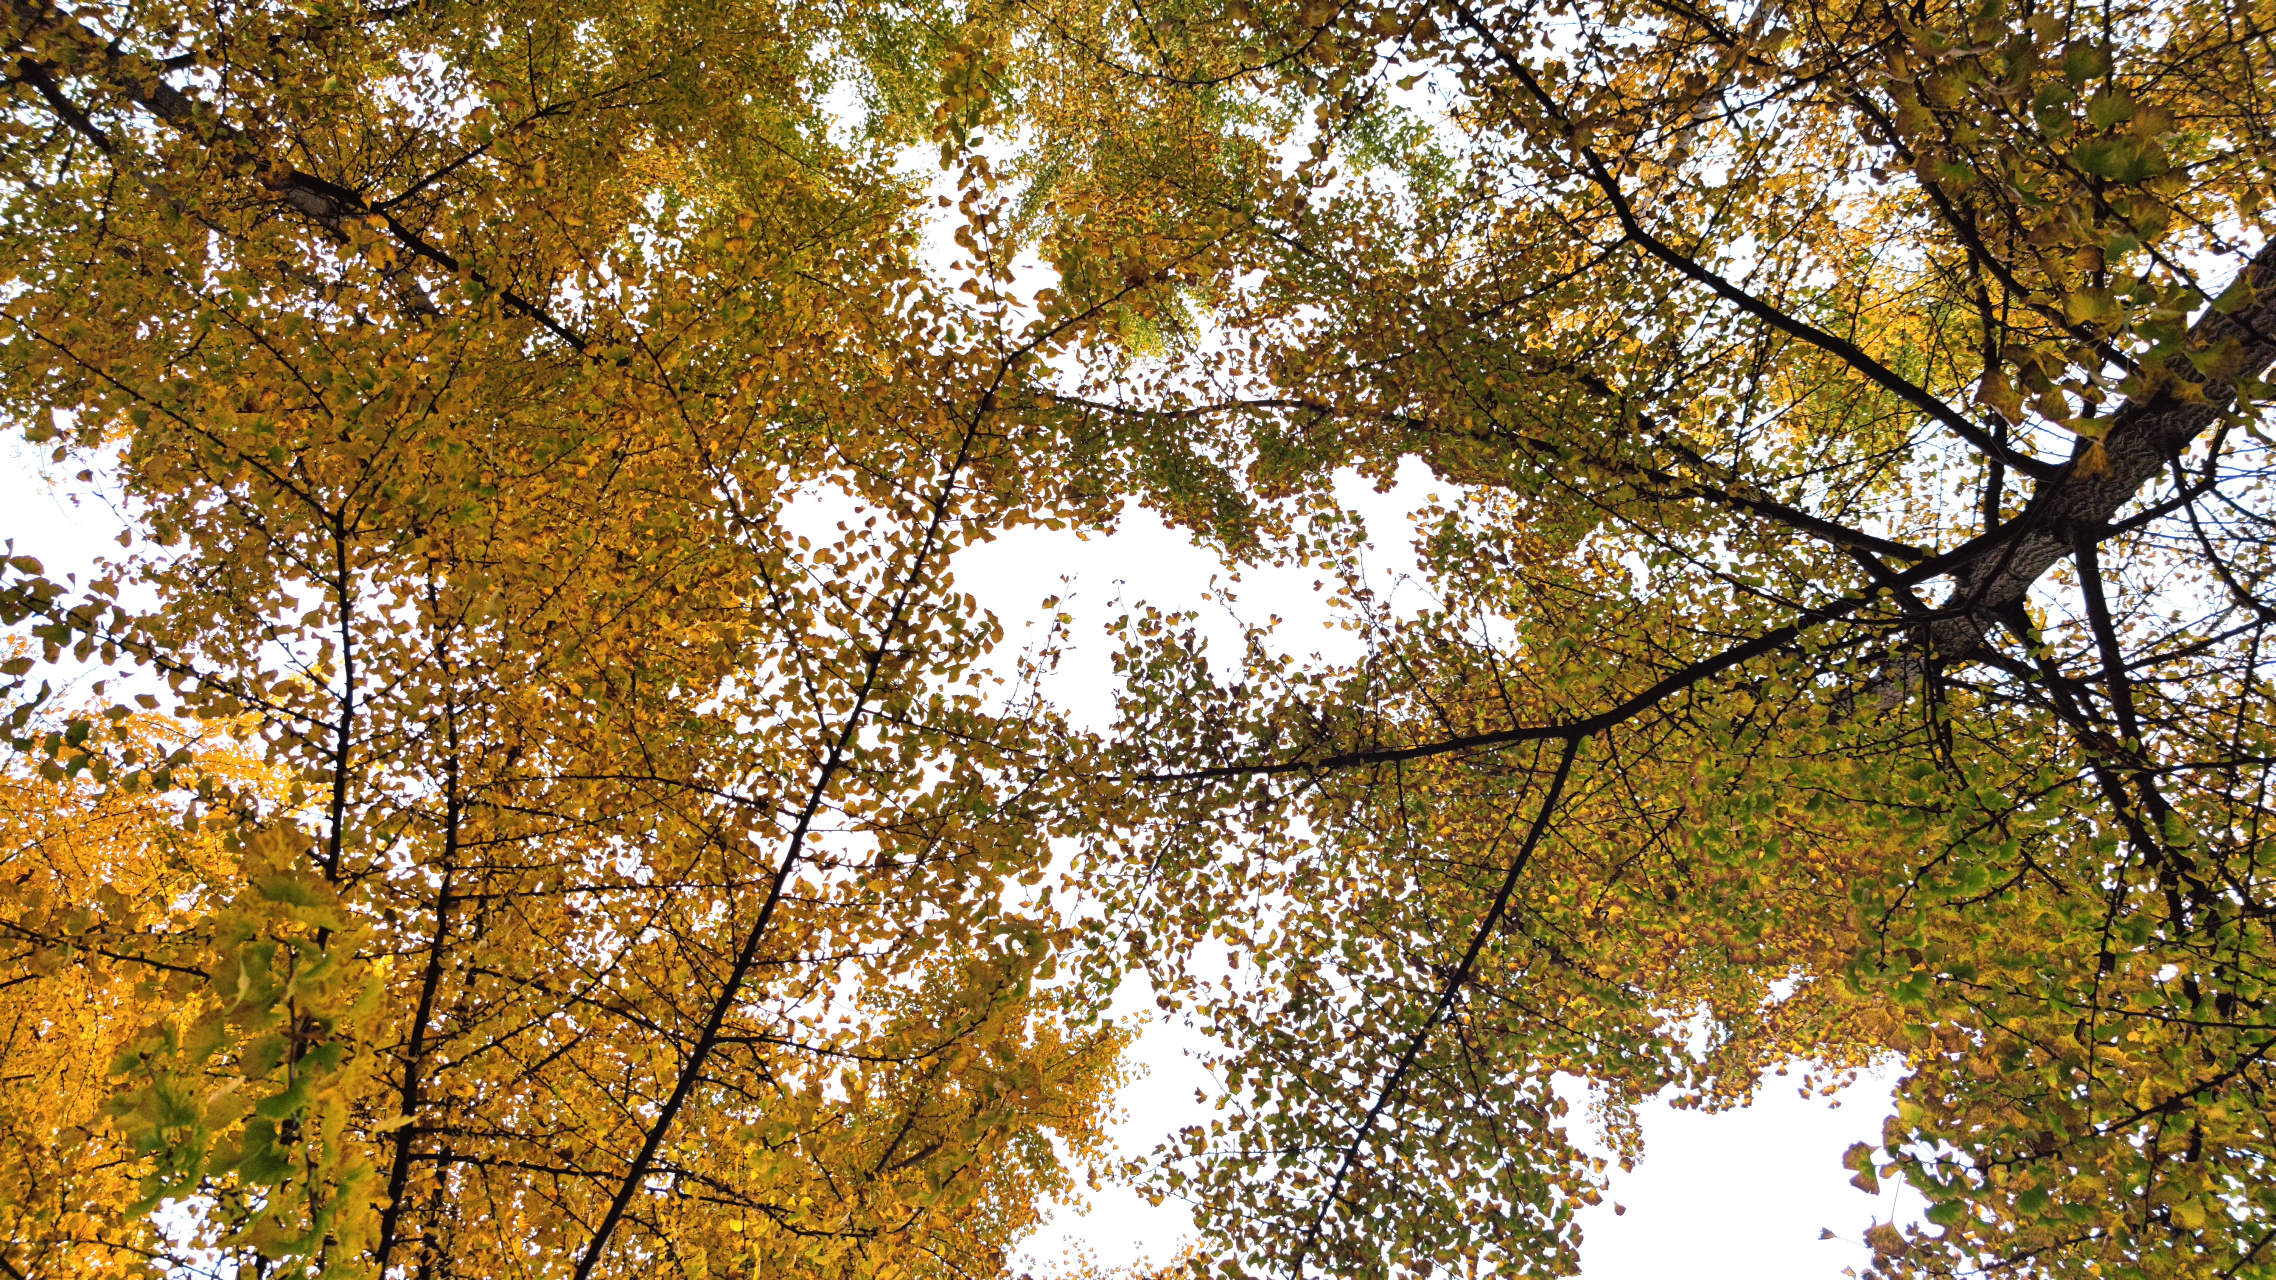 羊马河银杏园环境特别好,树林中间有个鱼塘,金黄的树木倒映